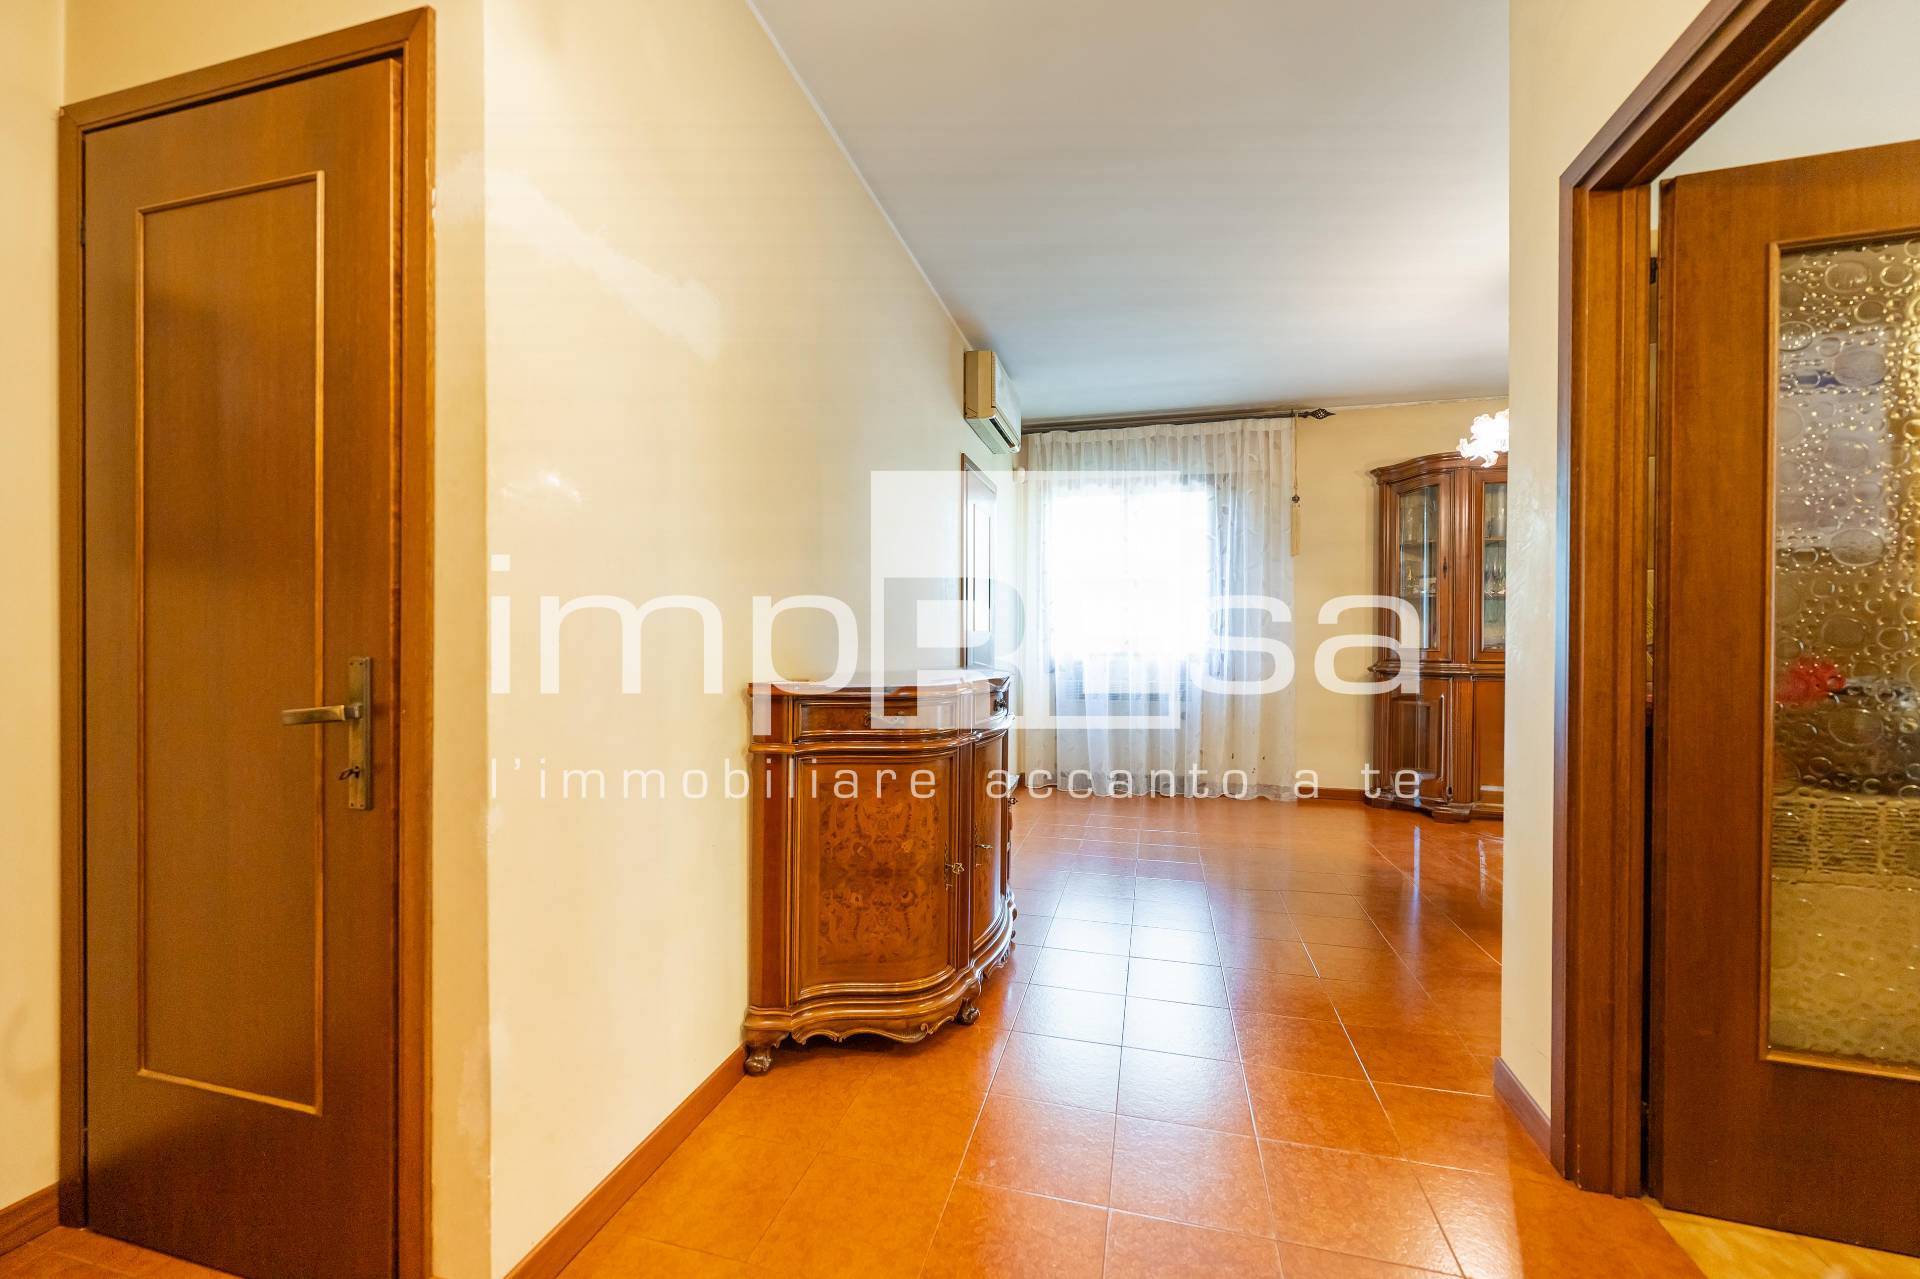 Villa a Schiera in vendita a Martellago, 4 locali, prezzo € 239.000 | PortaleAgenzieImmobiliari.it